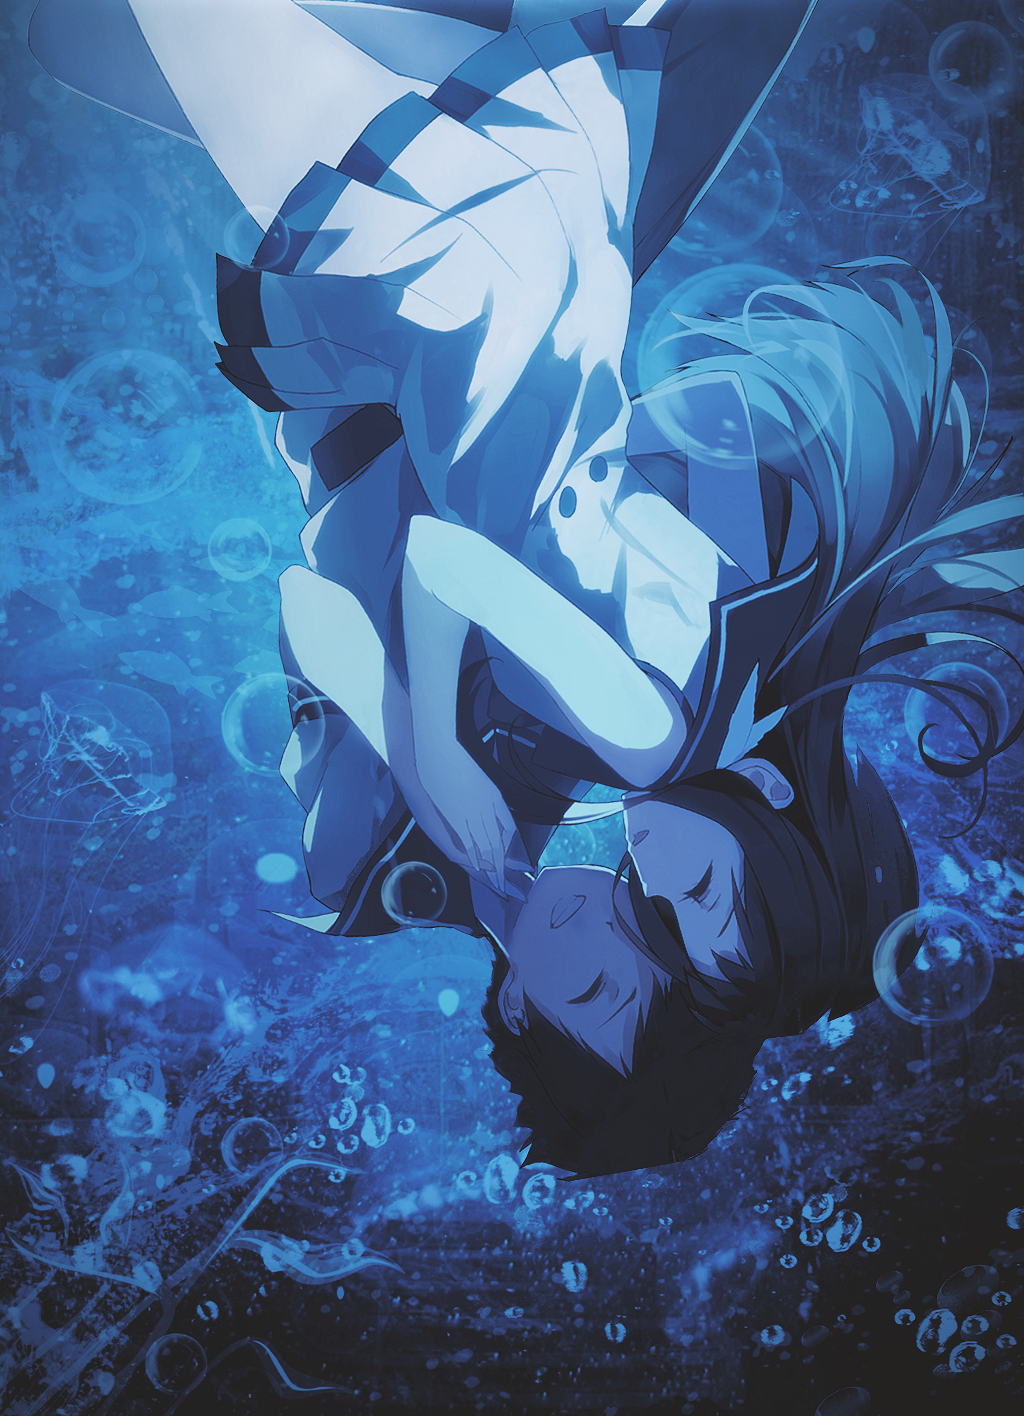 Nagi no Asukara (Nagi-asu: A Lull In The Sea) Image by ea mtkt